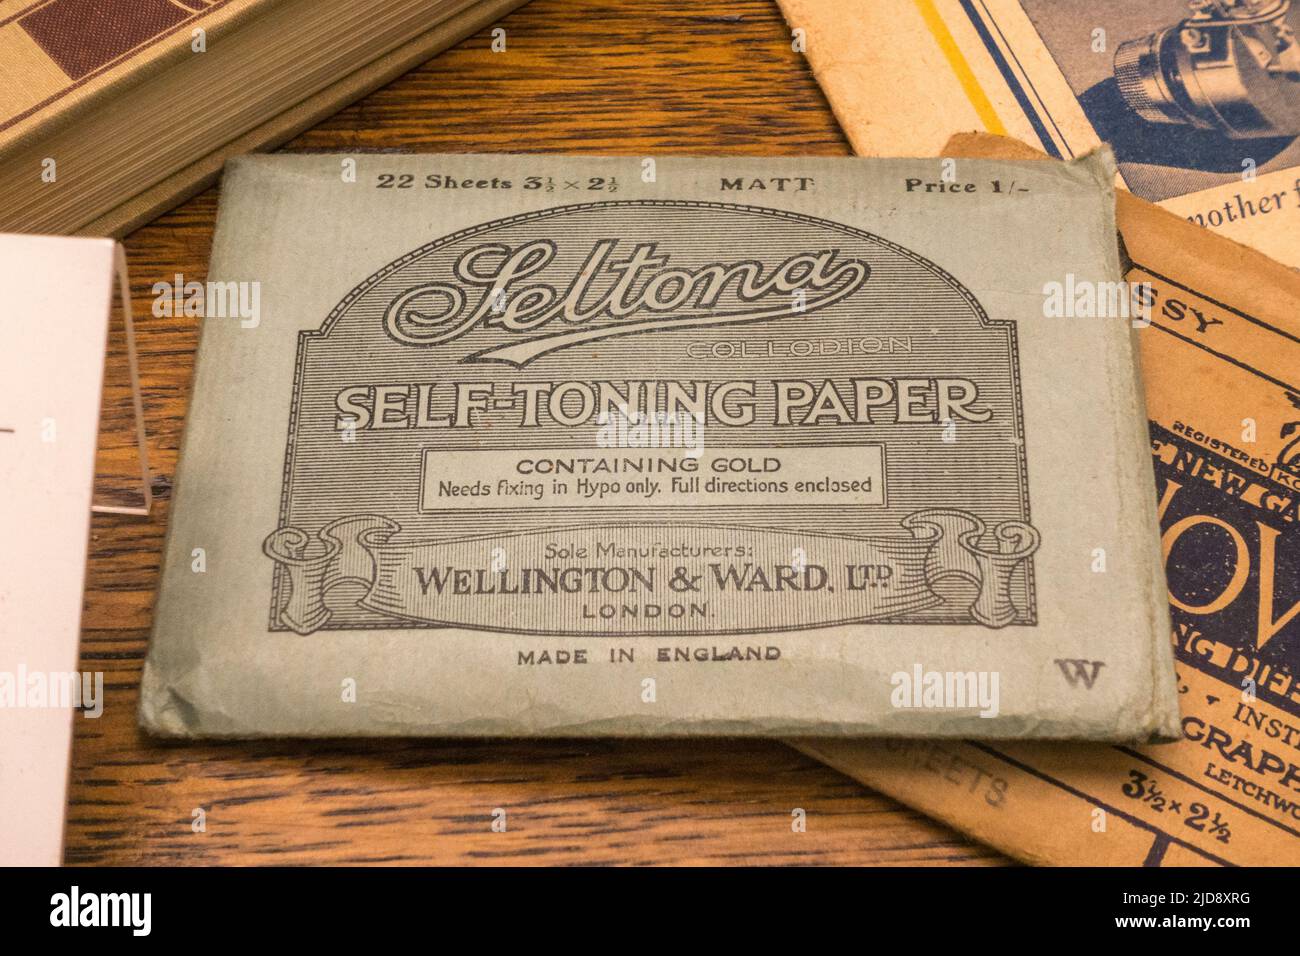 Ein Paket Seltona Kollodion selbsttonenden Papiers, das in einem Medienmuseum ausgestellt ist. Stockfoto